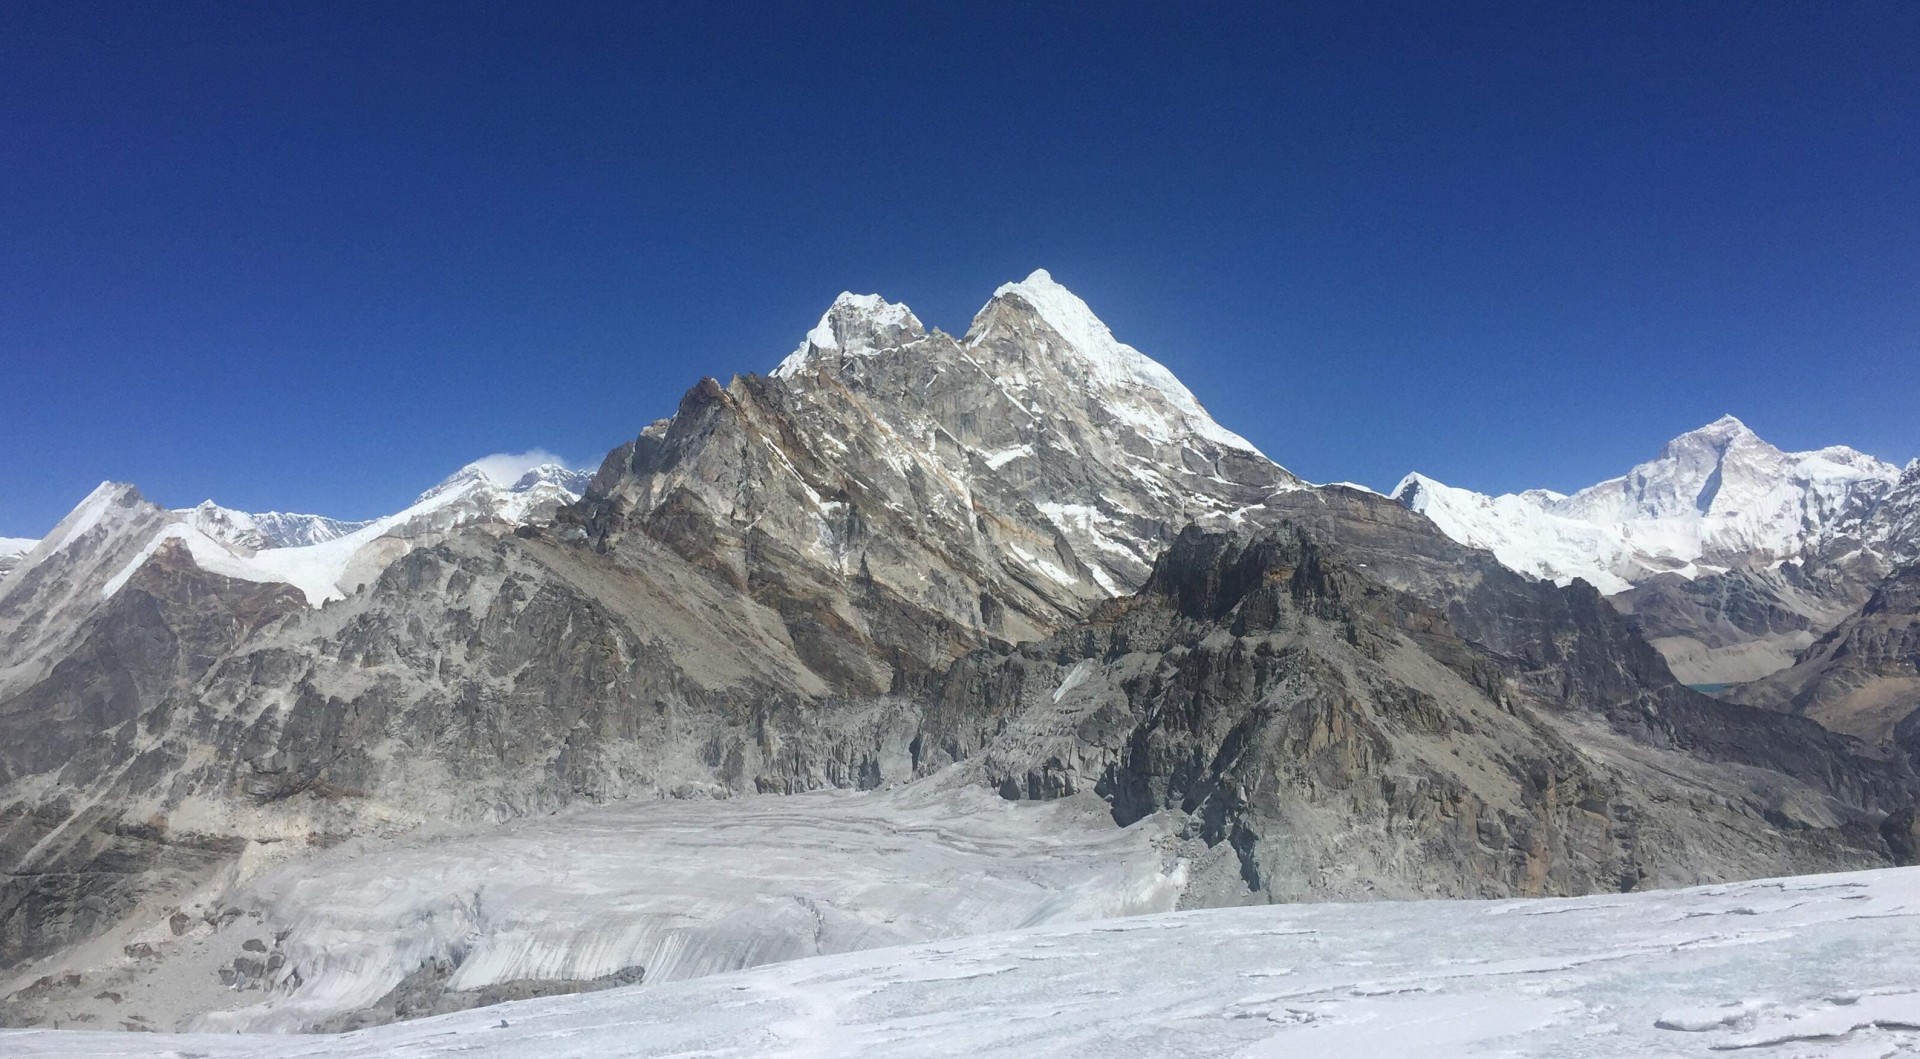 Sherpani Col High Pass Trekking with Mera Peak Climbing